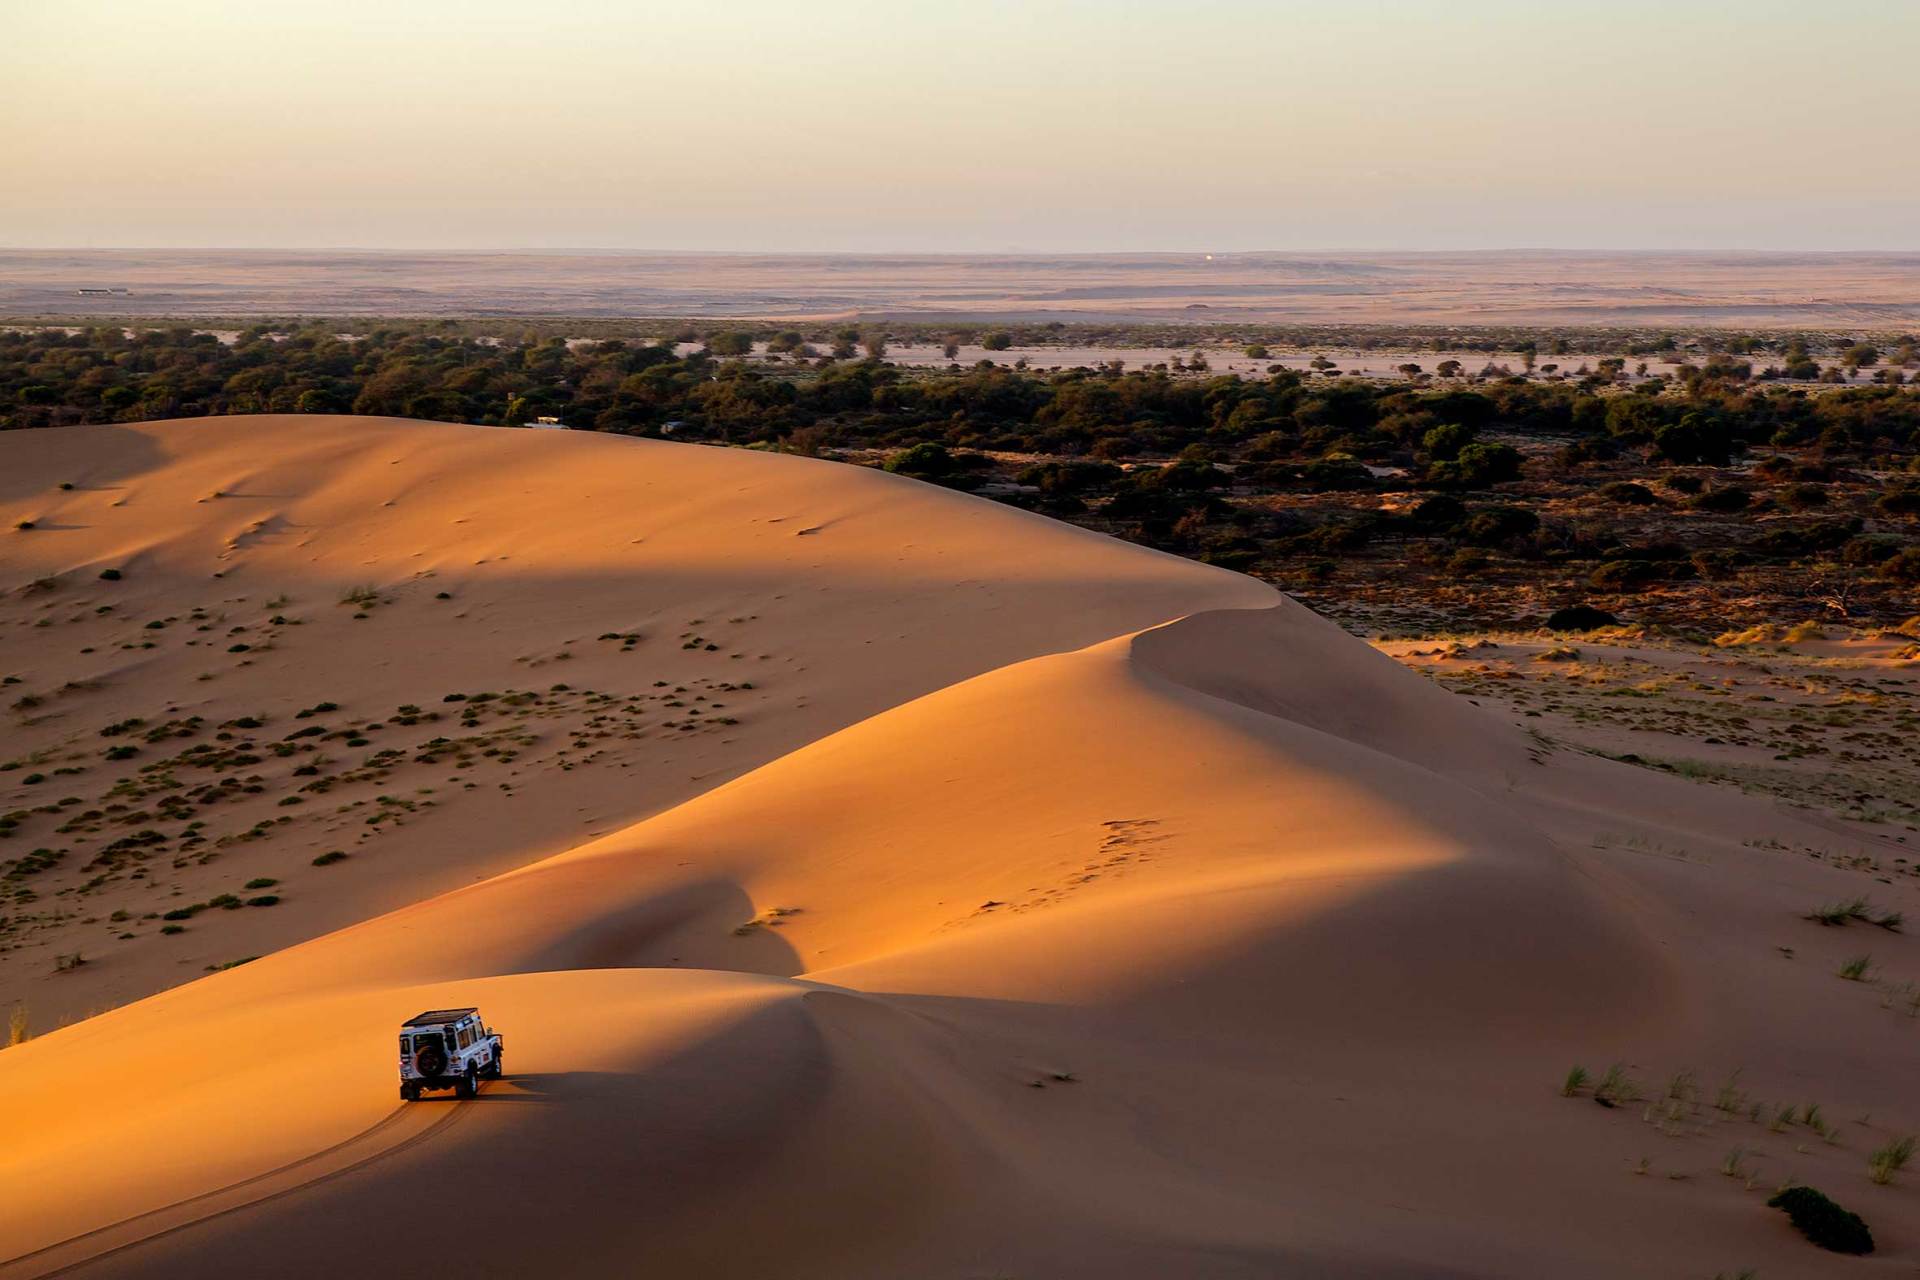 - Namib Desert, Namibia -